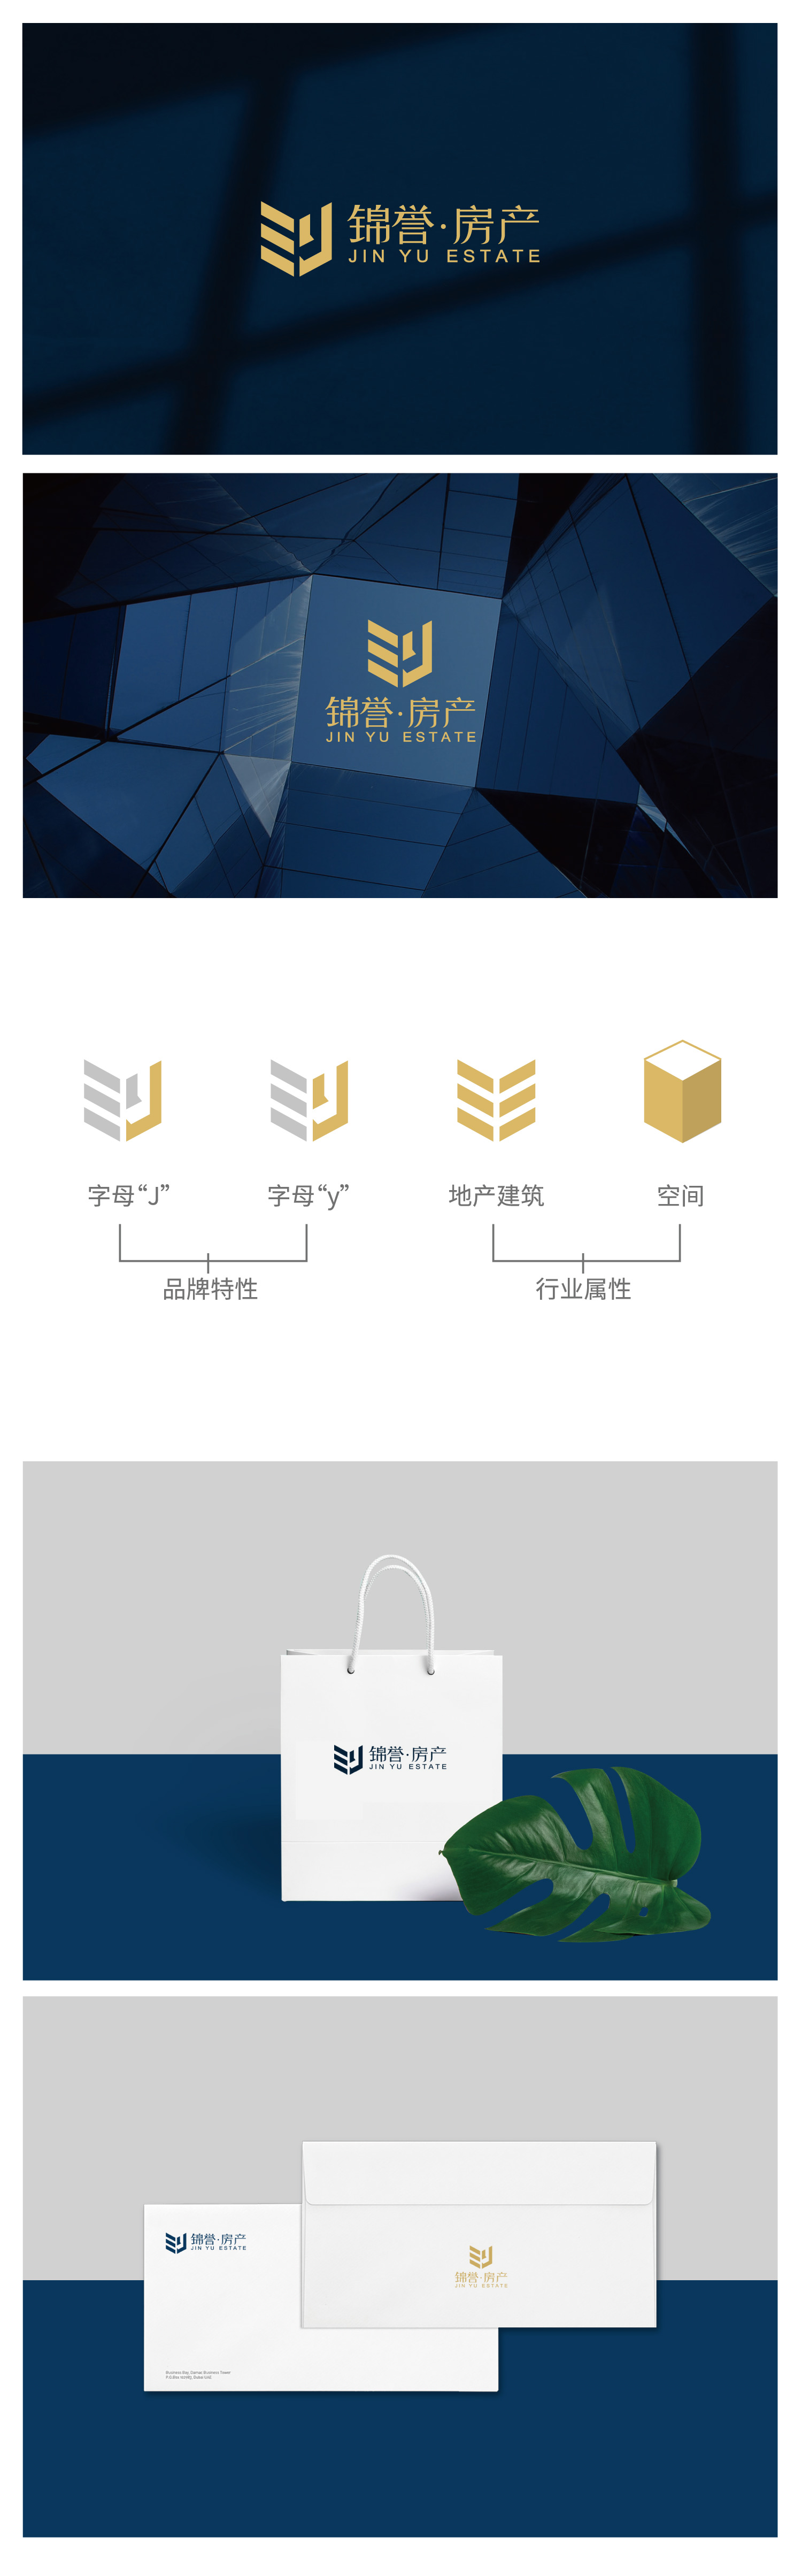 锦誉logo-蓝色-预览稿.jpg